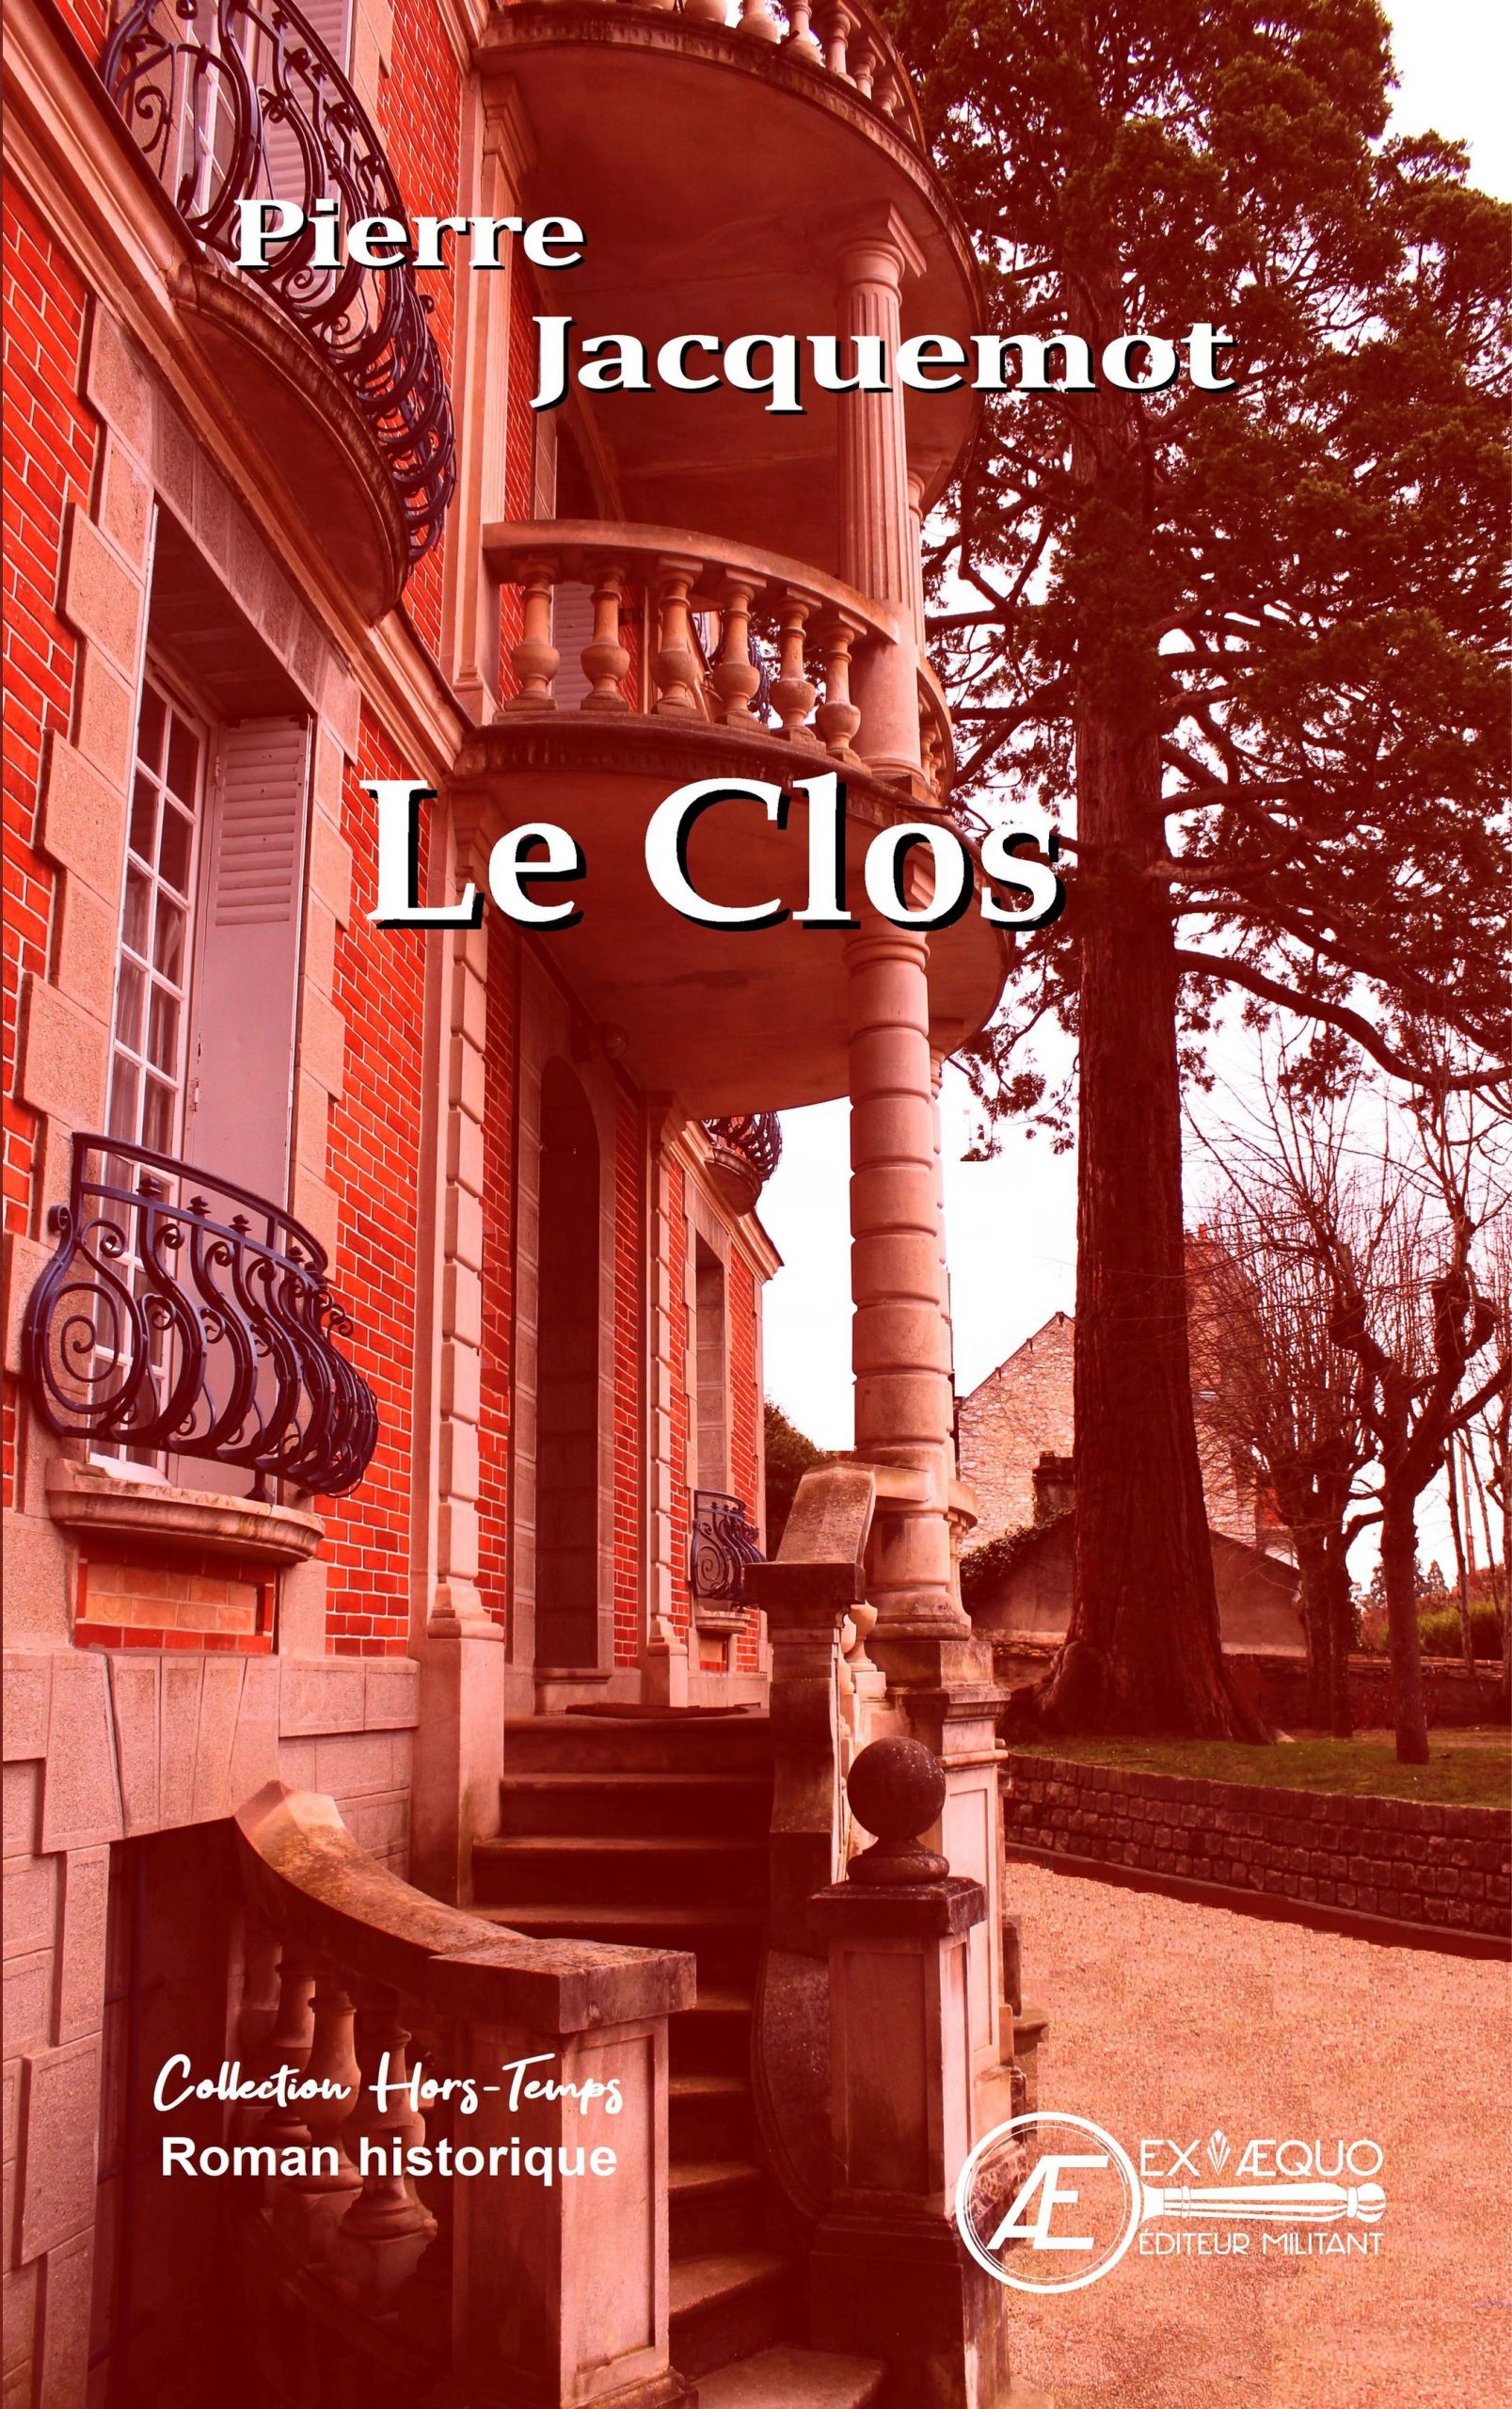 You are currently viewing Le Clos, de Pierre Jacquemot